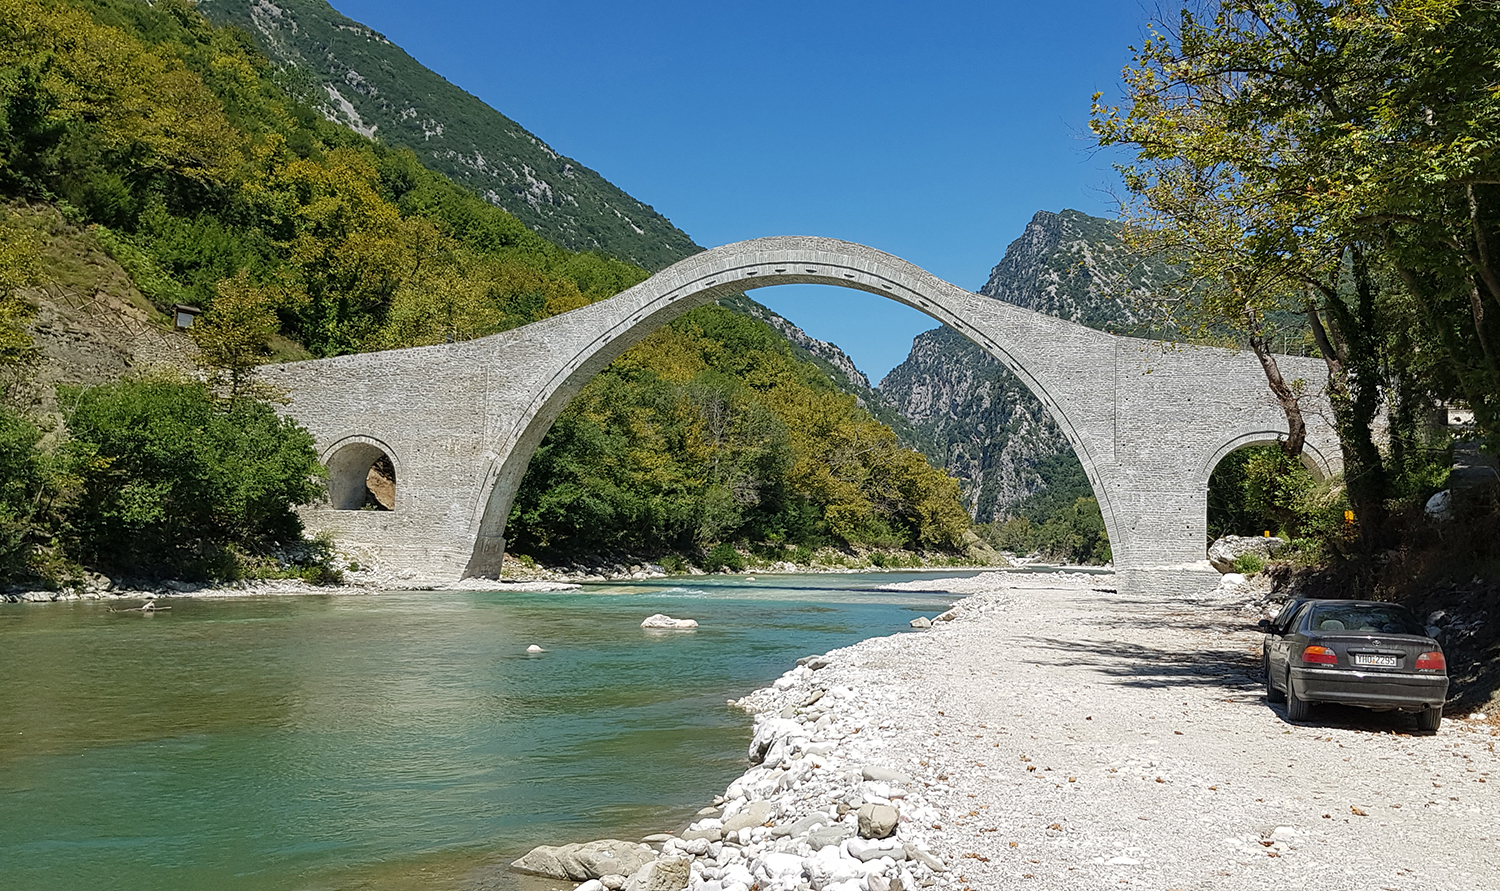 Image 'Plaka Bridge, Epirus'